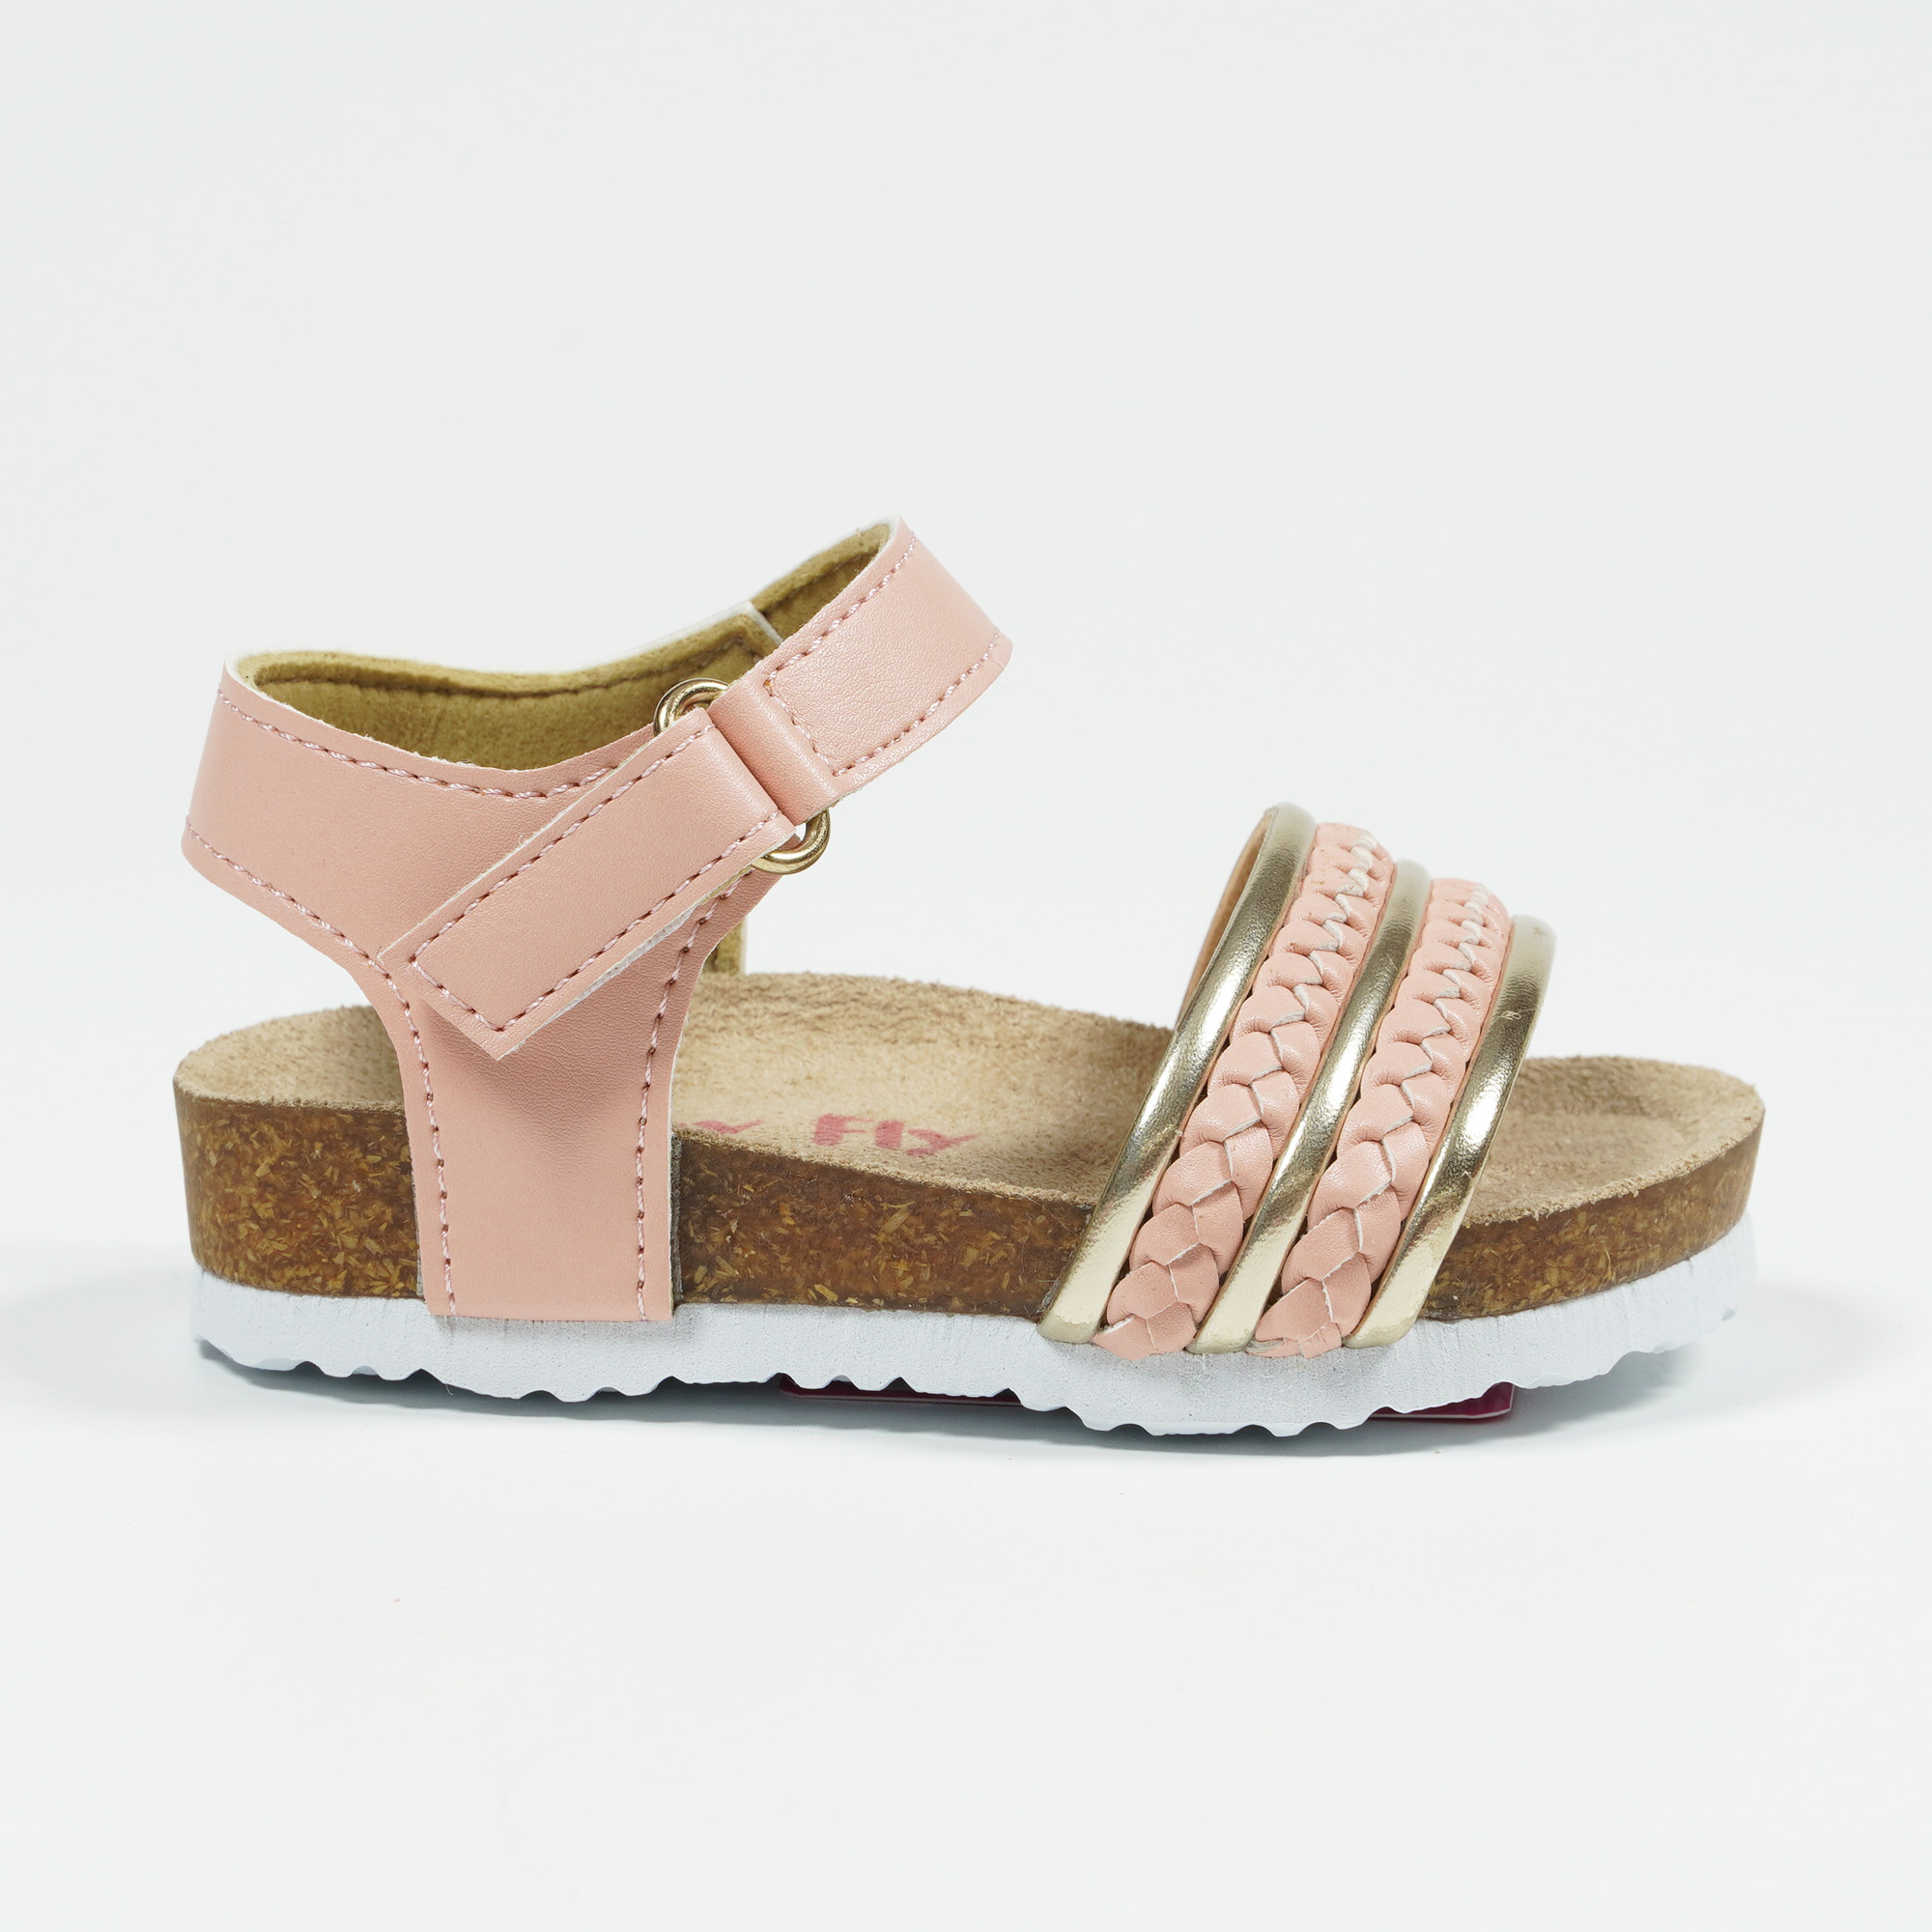 Toddler Girl Sandals Pink Cork Footbed Sandals